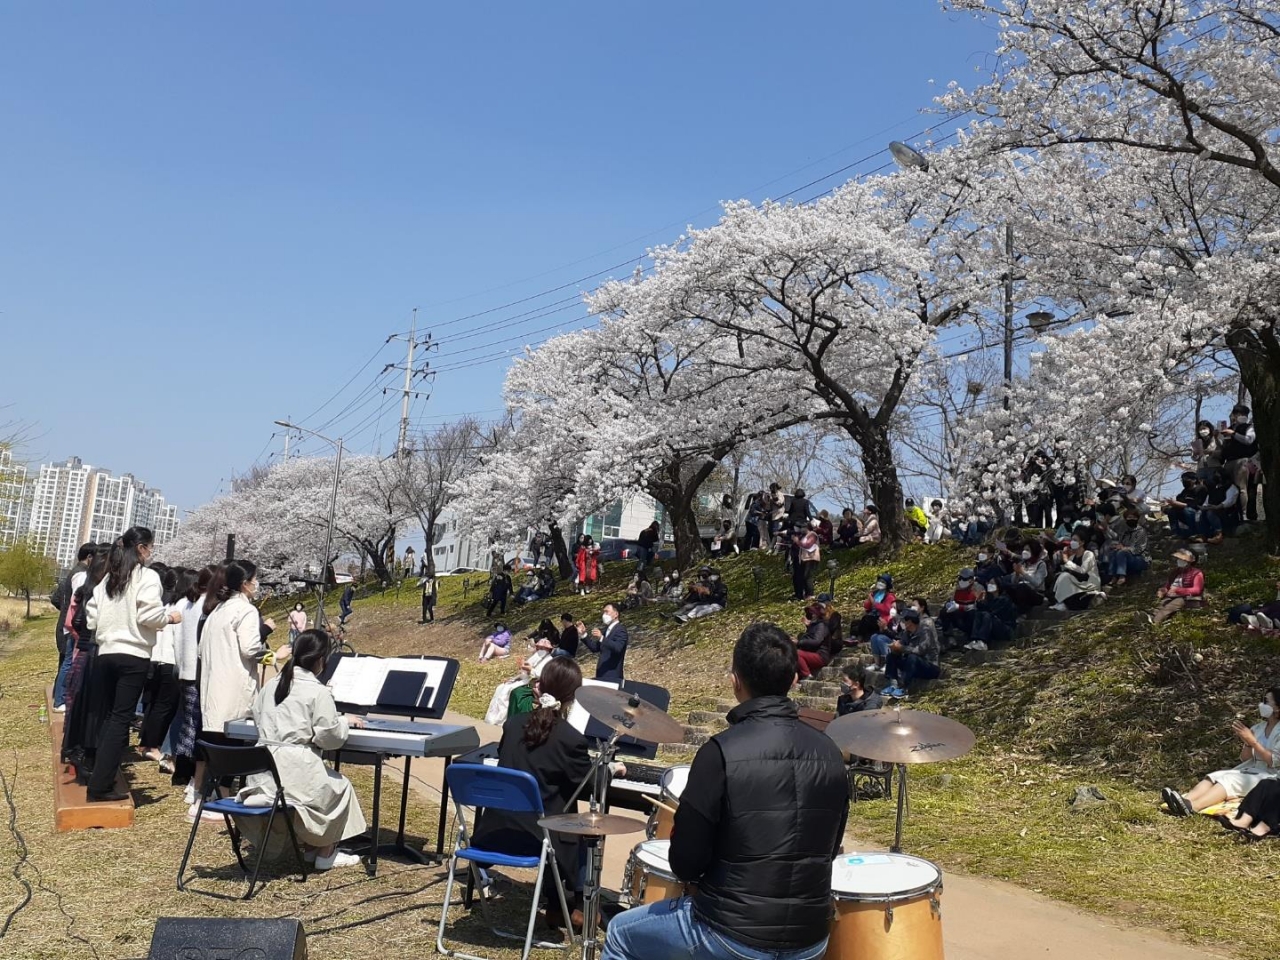 순천천시립합창단의 찾아가는 음악회 ‘동천, 꽃길을 걸으며’ 공연이 5일부터 오는 7일까지 동천변에서 개최된다. 